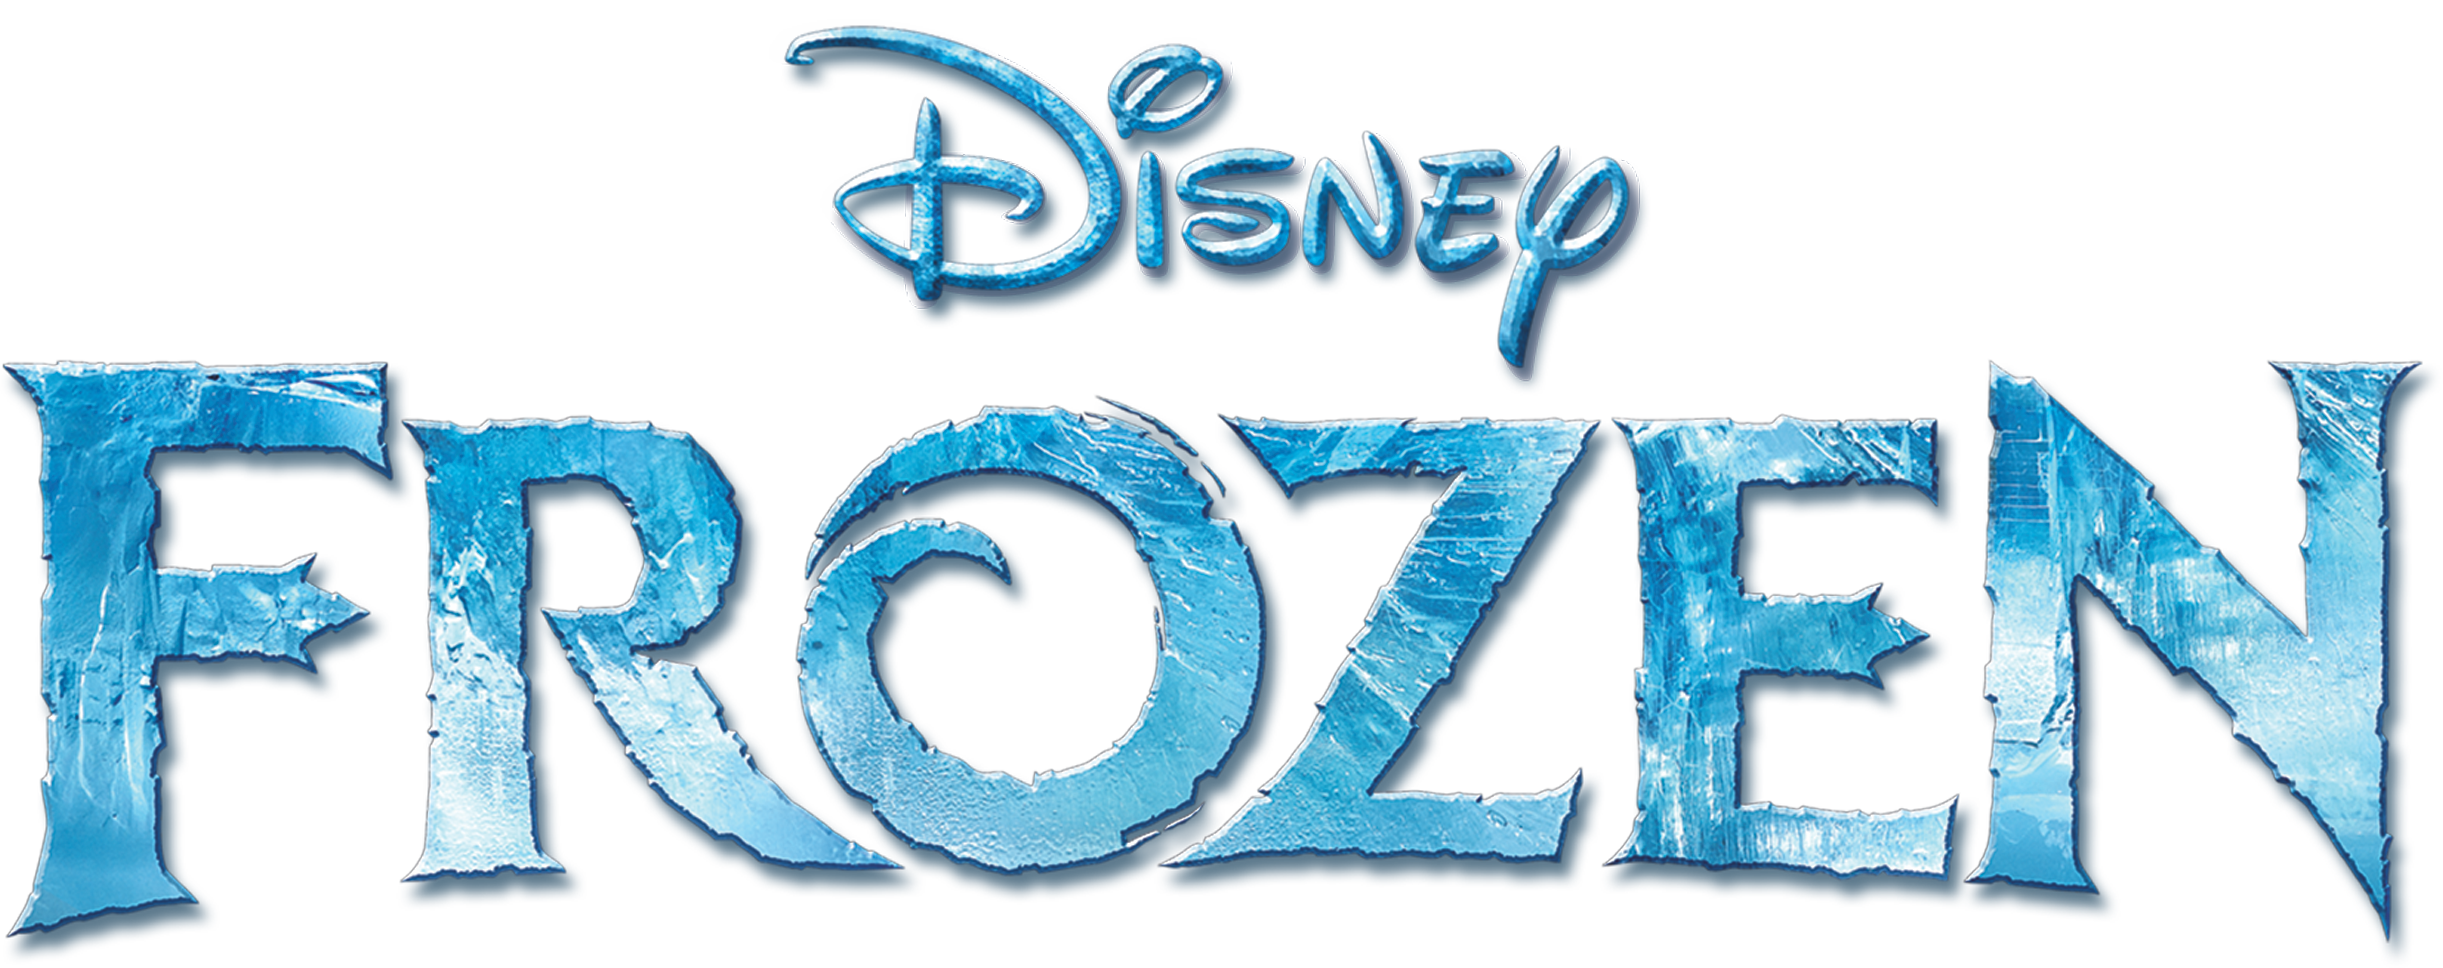 Frozen Logo Png - KibrisPDR